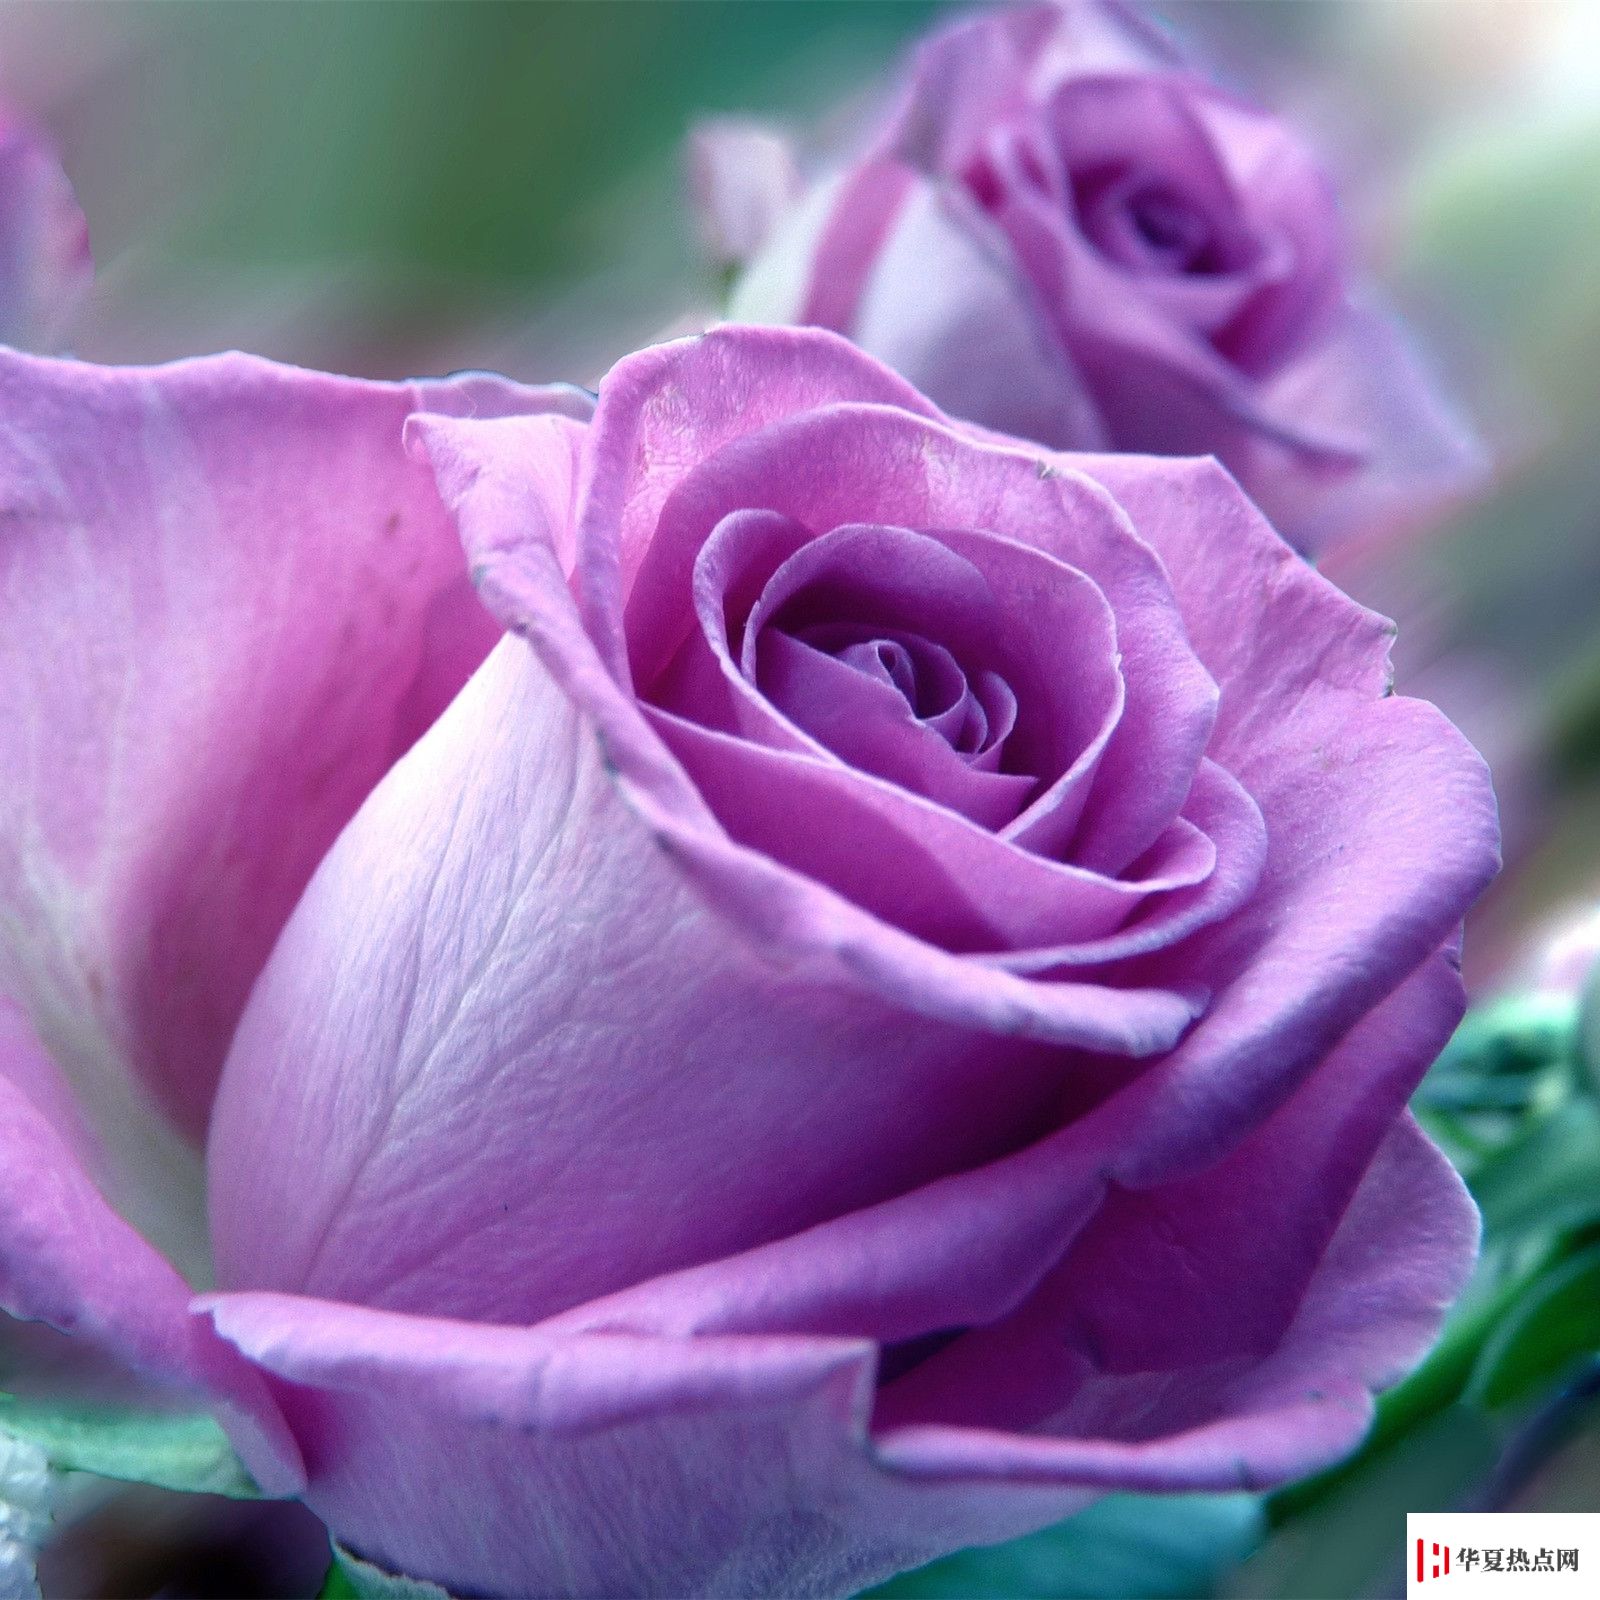 高清晰紫色玫瑰花壁纸-欧莱凯设计网